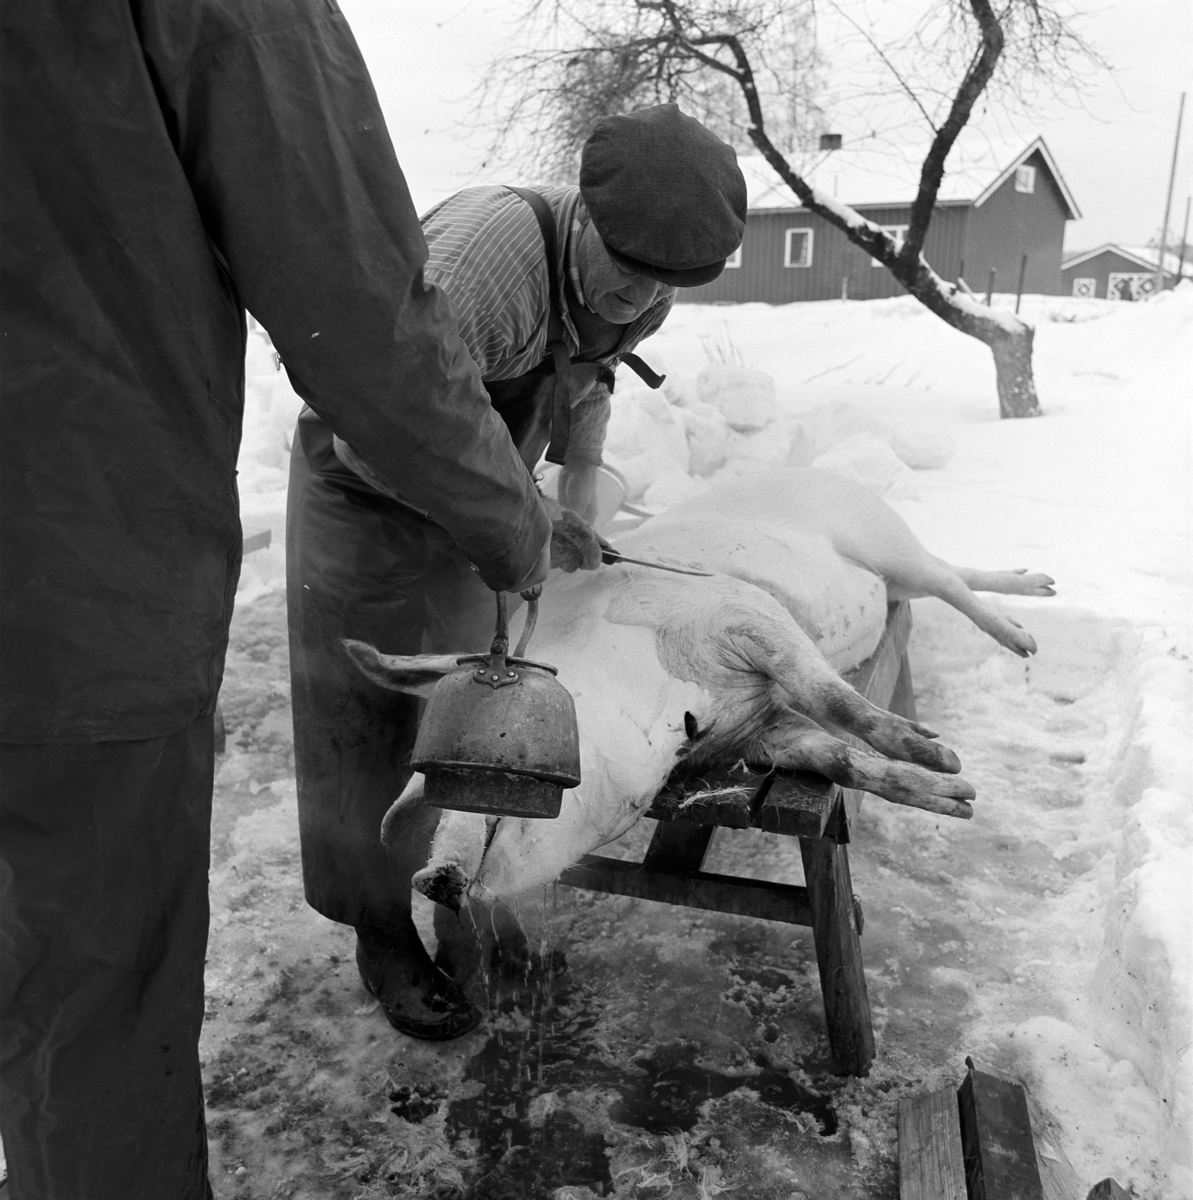 Dokumentasjon av griseslakting i 1977, på Lunde i Gaupen, Ringsaker. Bygdeslakter Johs. Rosenborg. Slakteren skraper bort grisebust etterhvert som hjelperen heller på skåldevann.Slaktebenk, skølling